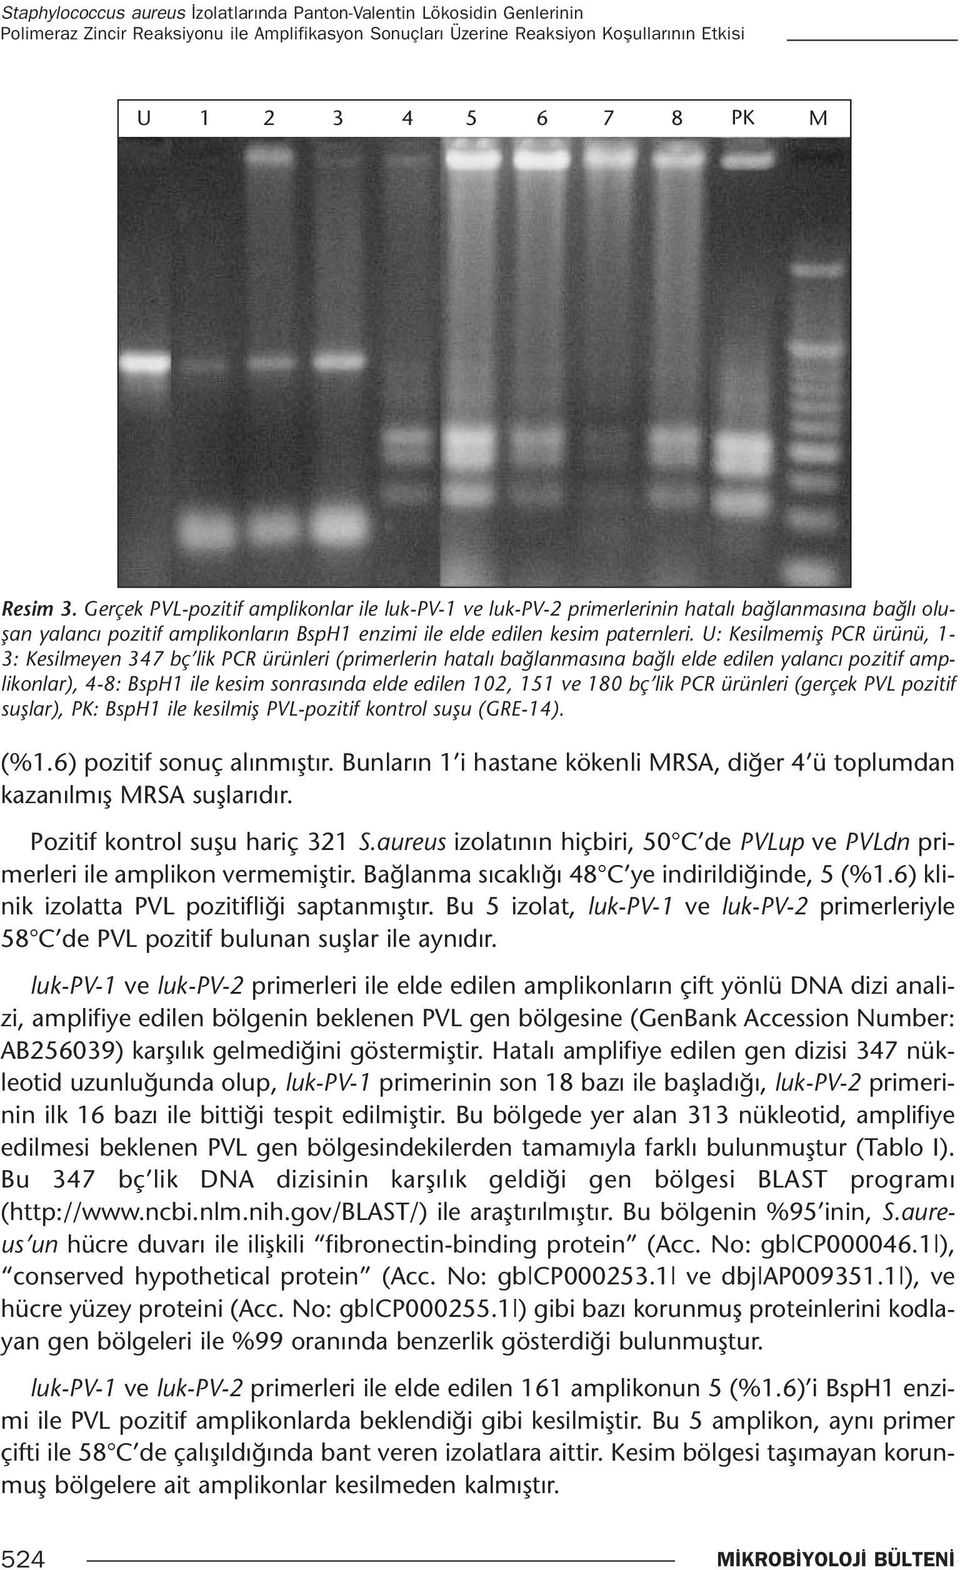 U: Kesilmemiş PCR ürünü, 1-3: Kesilmeyen 347 bç lik PCR ürünleri (primerlerin hatalı bağlanmasına bağlı elde edilen yalancı pozitif amplikonlar), 4-8: BspH1 ile kesim sonrasında elde edilen 102, 151